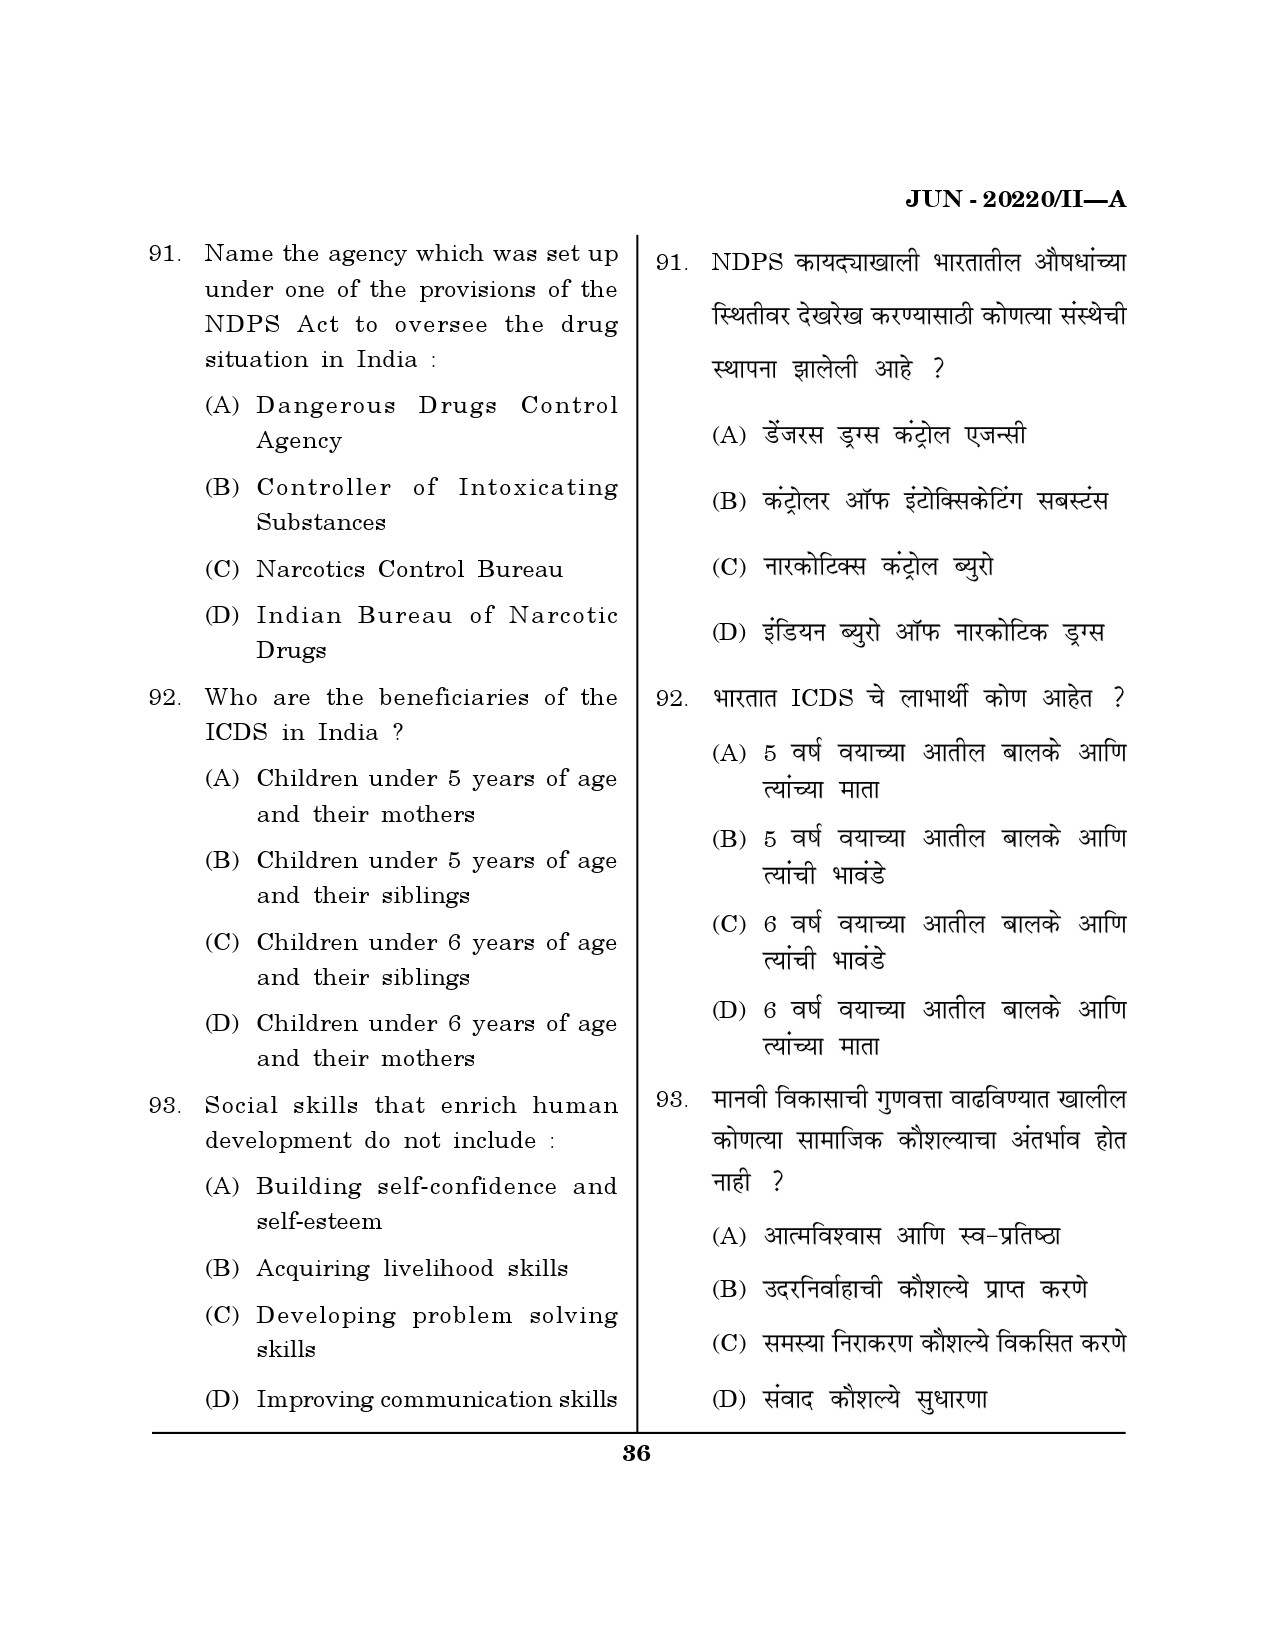 Maharashtra SET Social Work Question Paper II June 2020 35